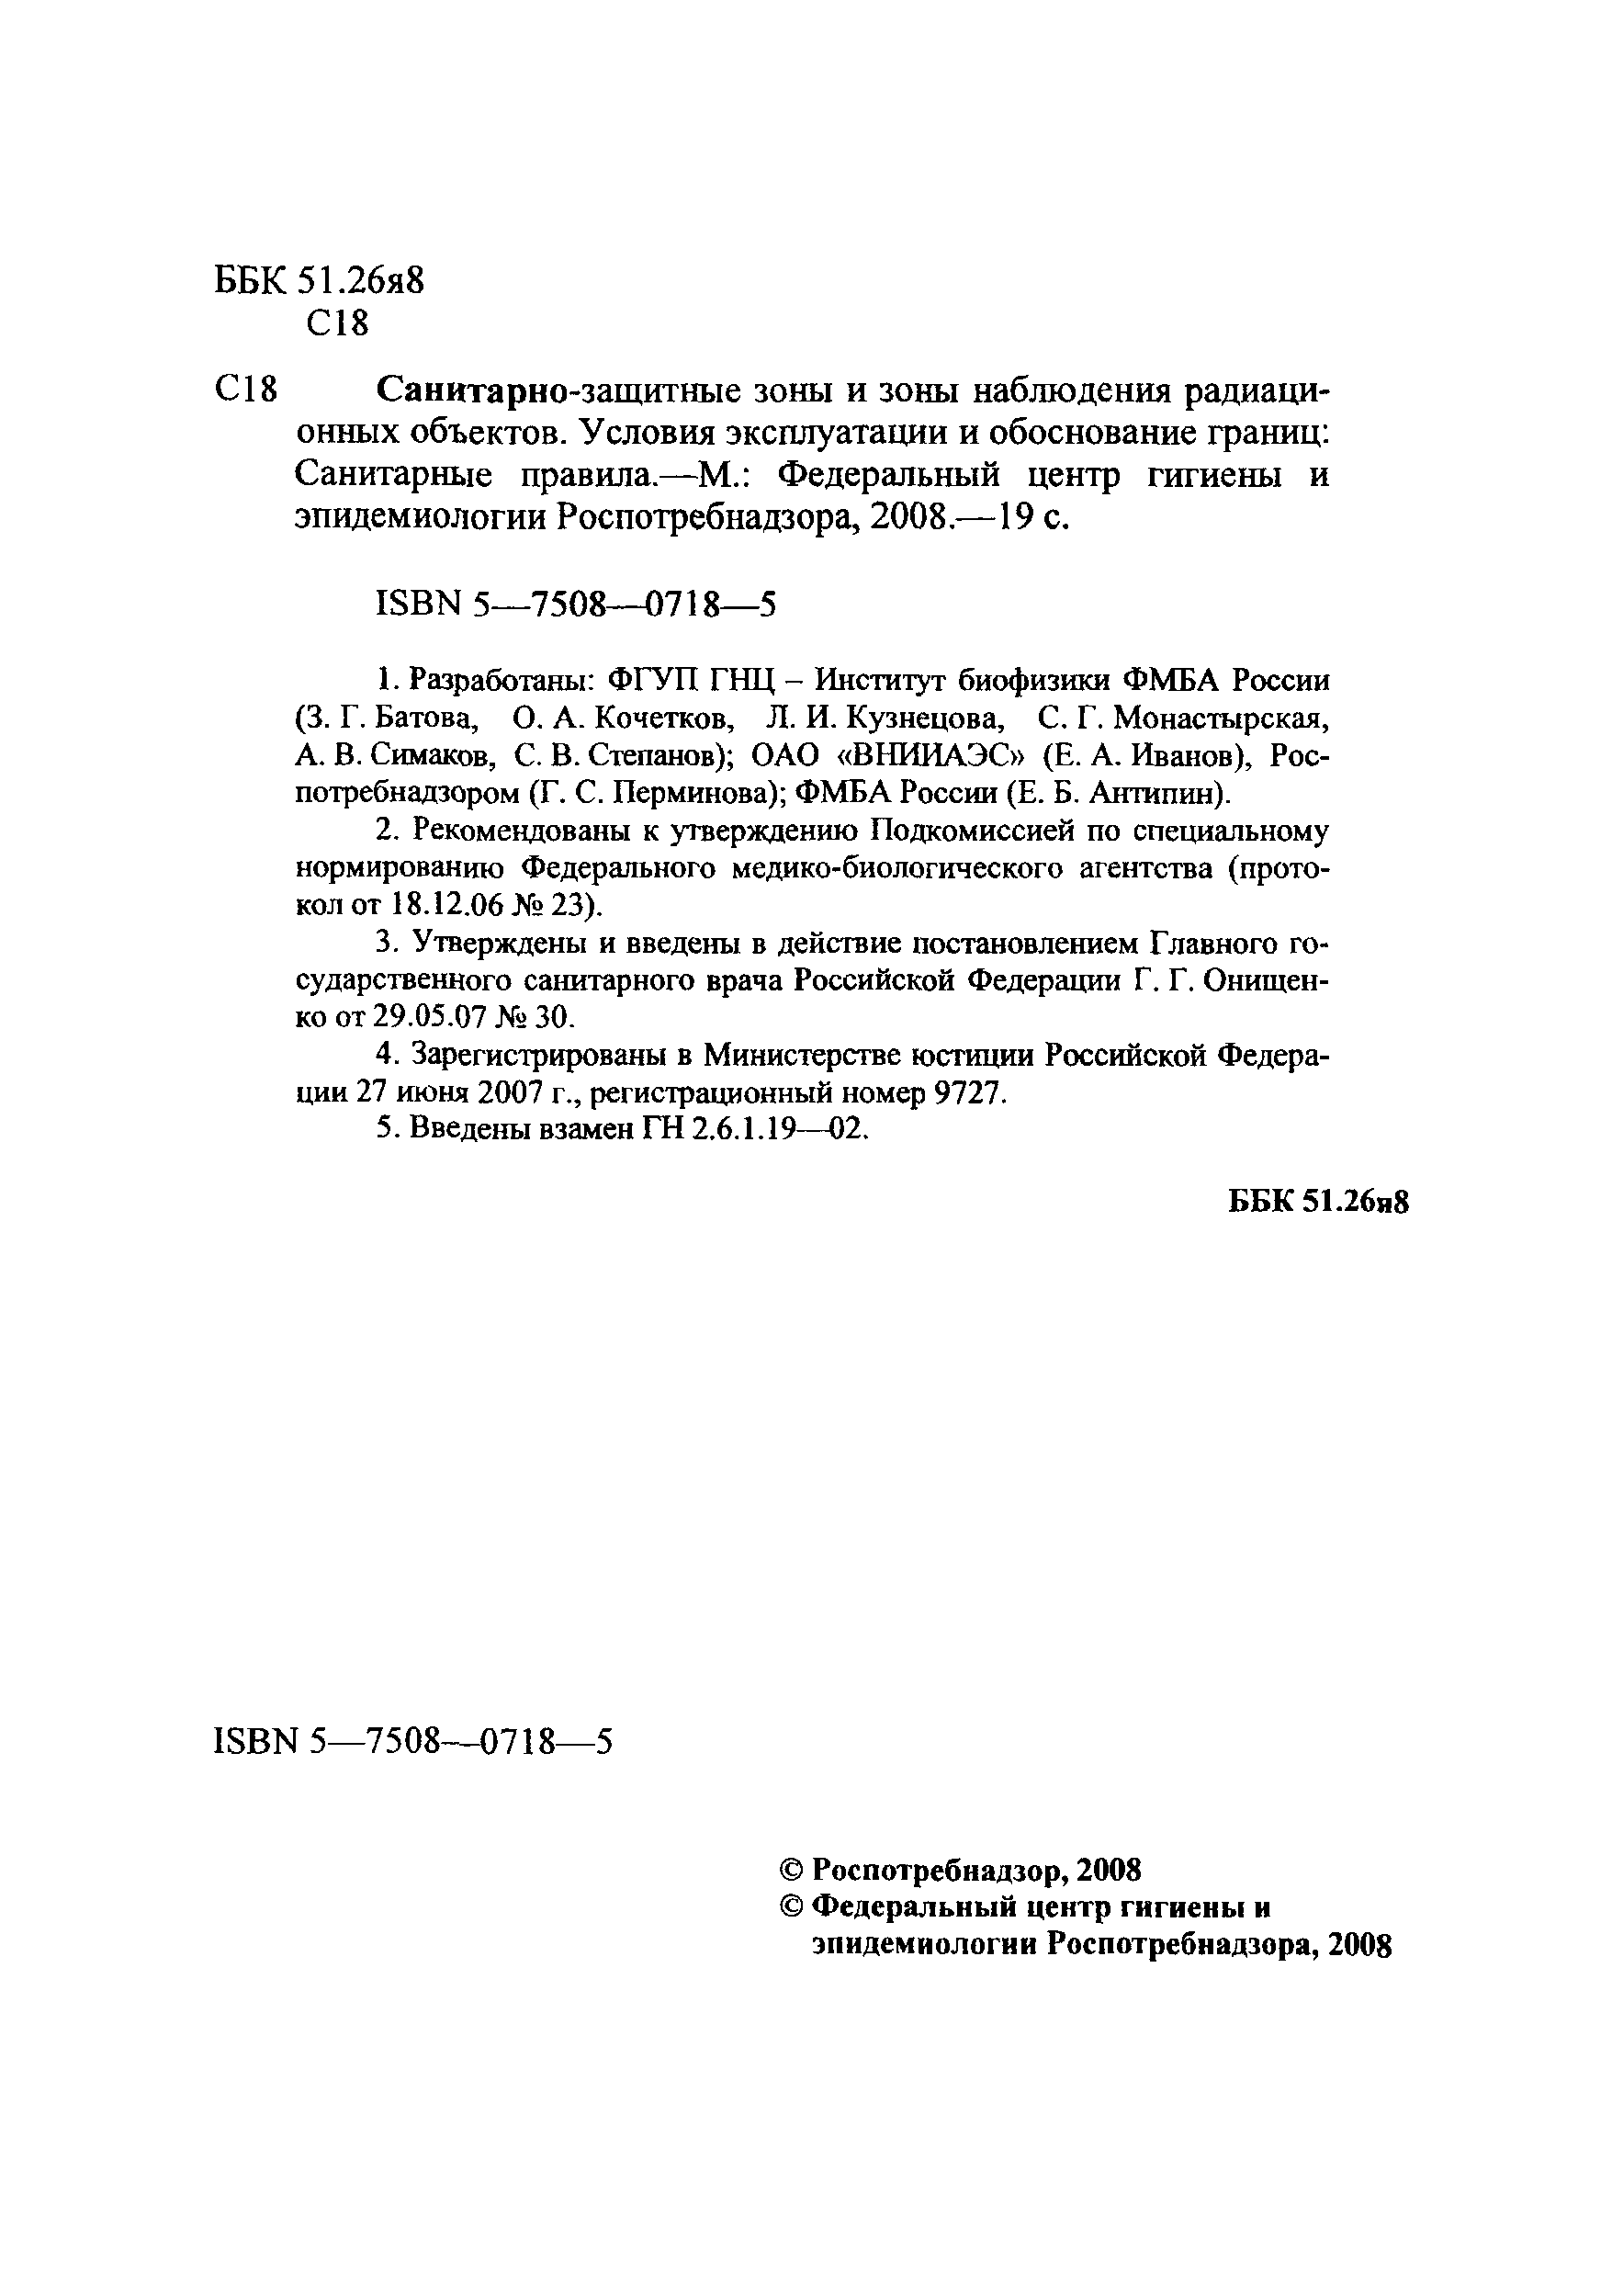 СП 2.6.1.2216-07